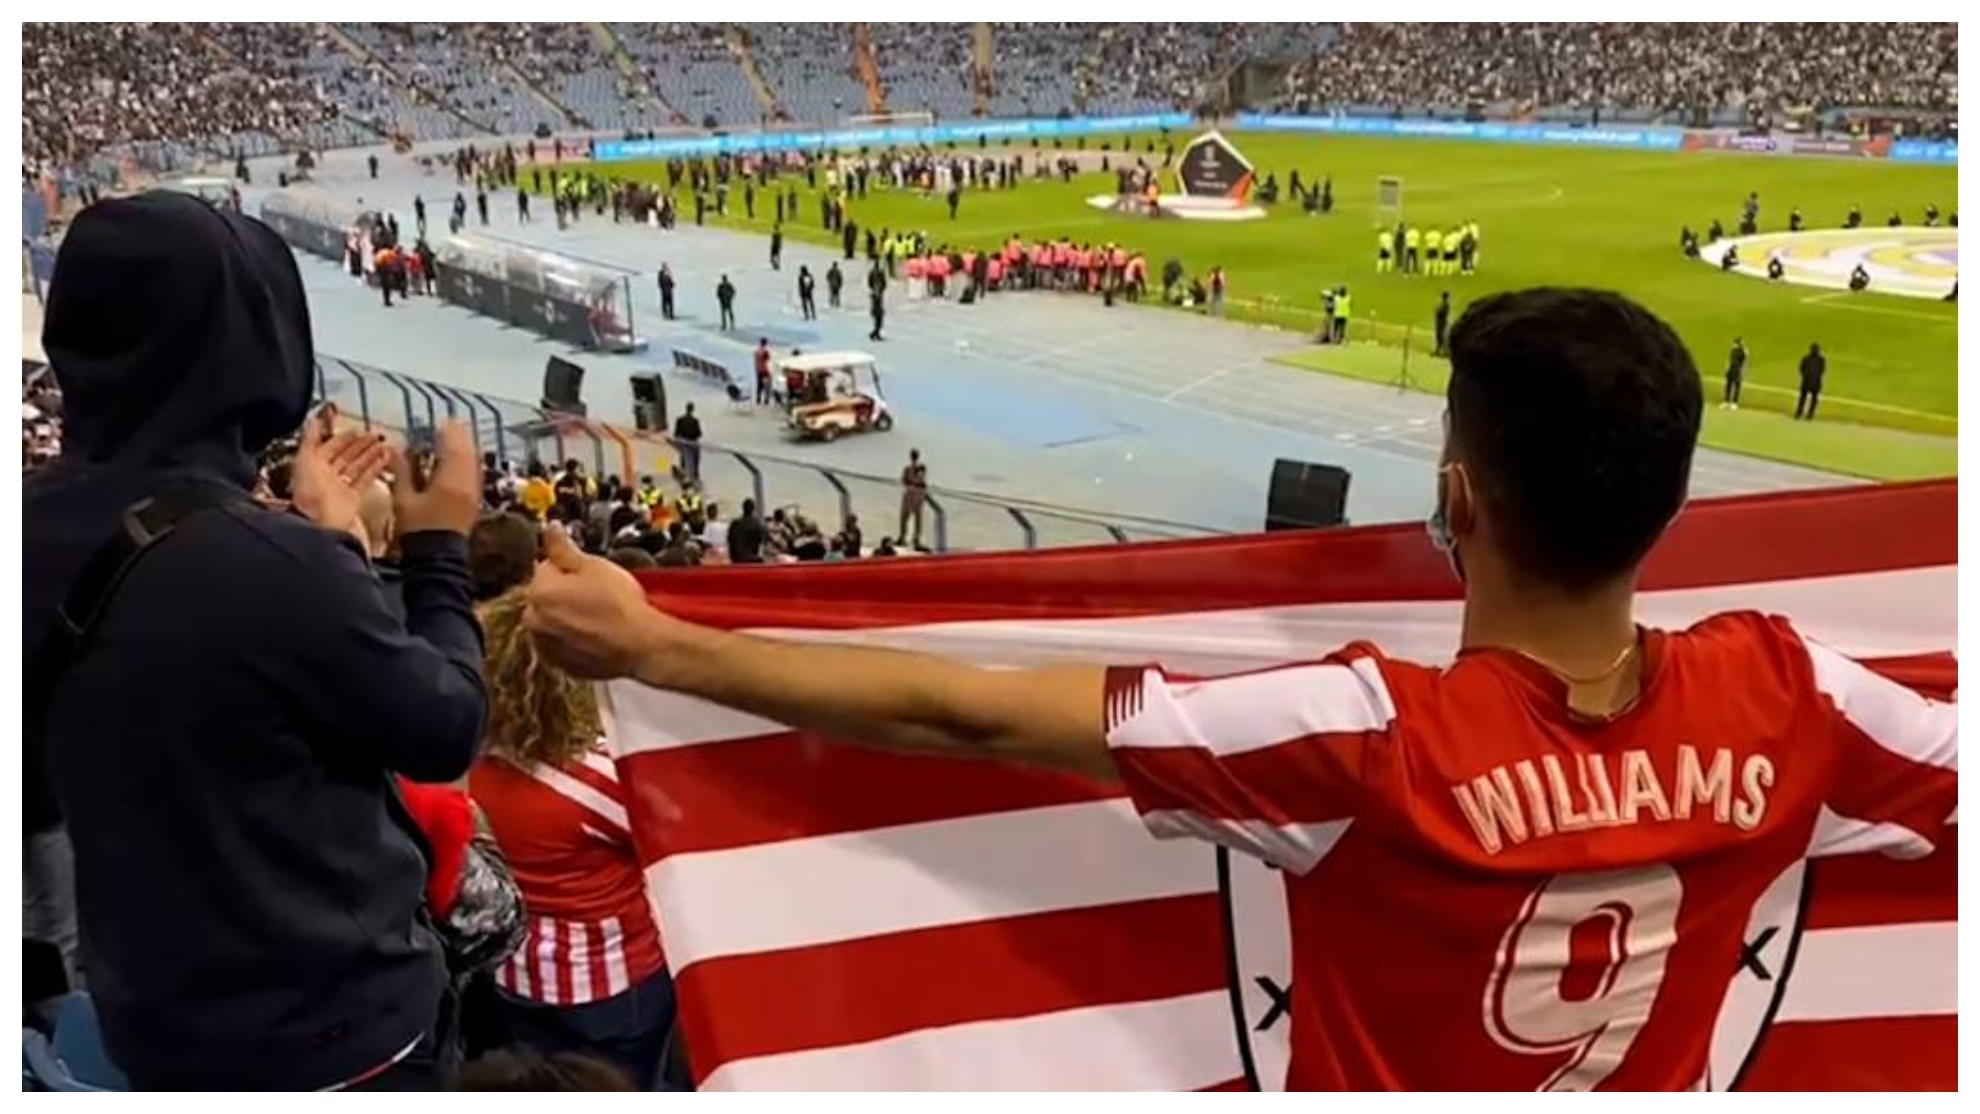 Un aficionado del Athletid sostiene una bandera durante la final con la camiseta de Iñaki Williams